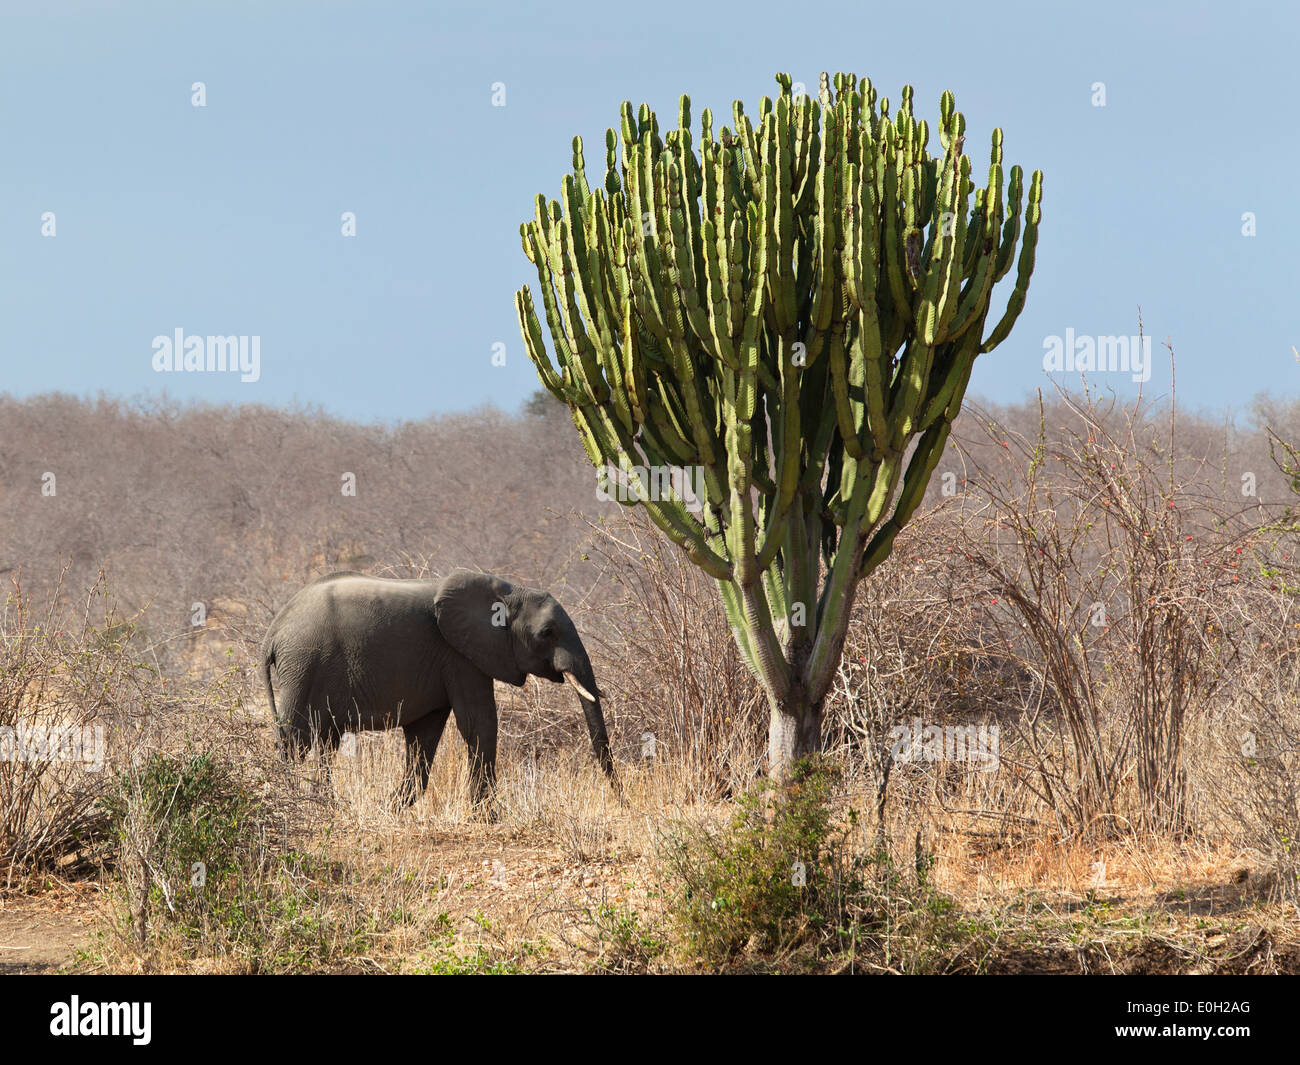 El elefante africano, Loxodonta africana y euphorbia, Euphorbia candelabrum, el Parque nacional Ruaha, Tanzania, África oriental, África Foto de stock